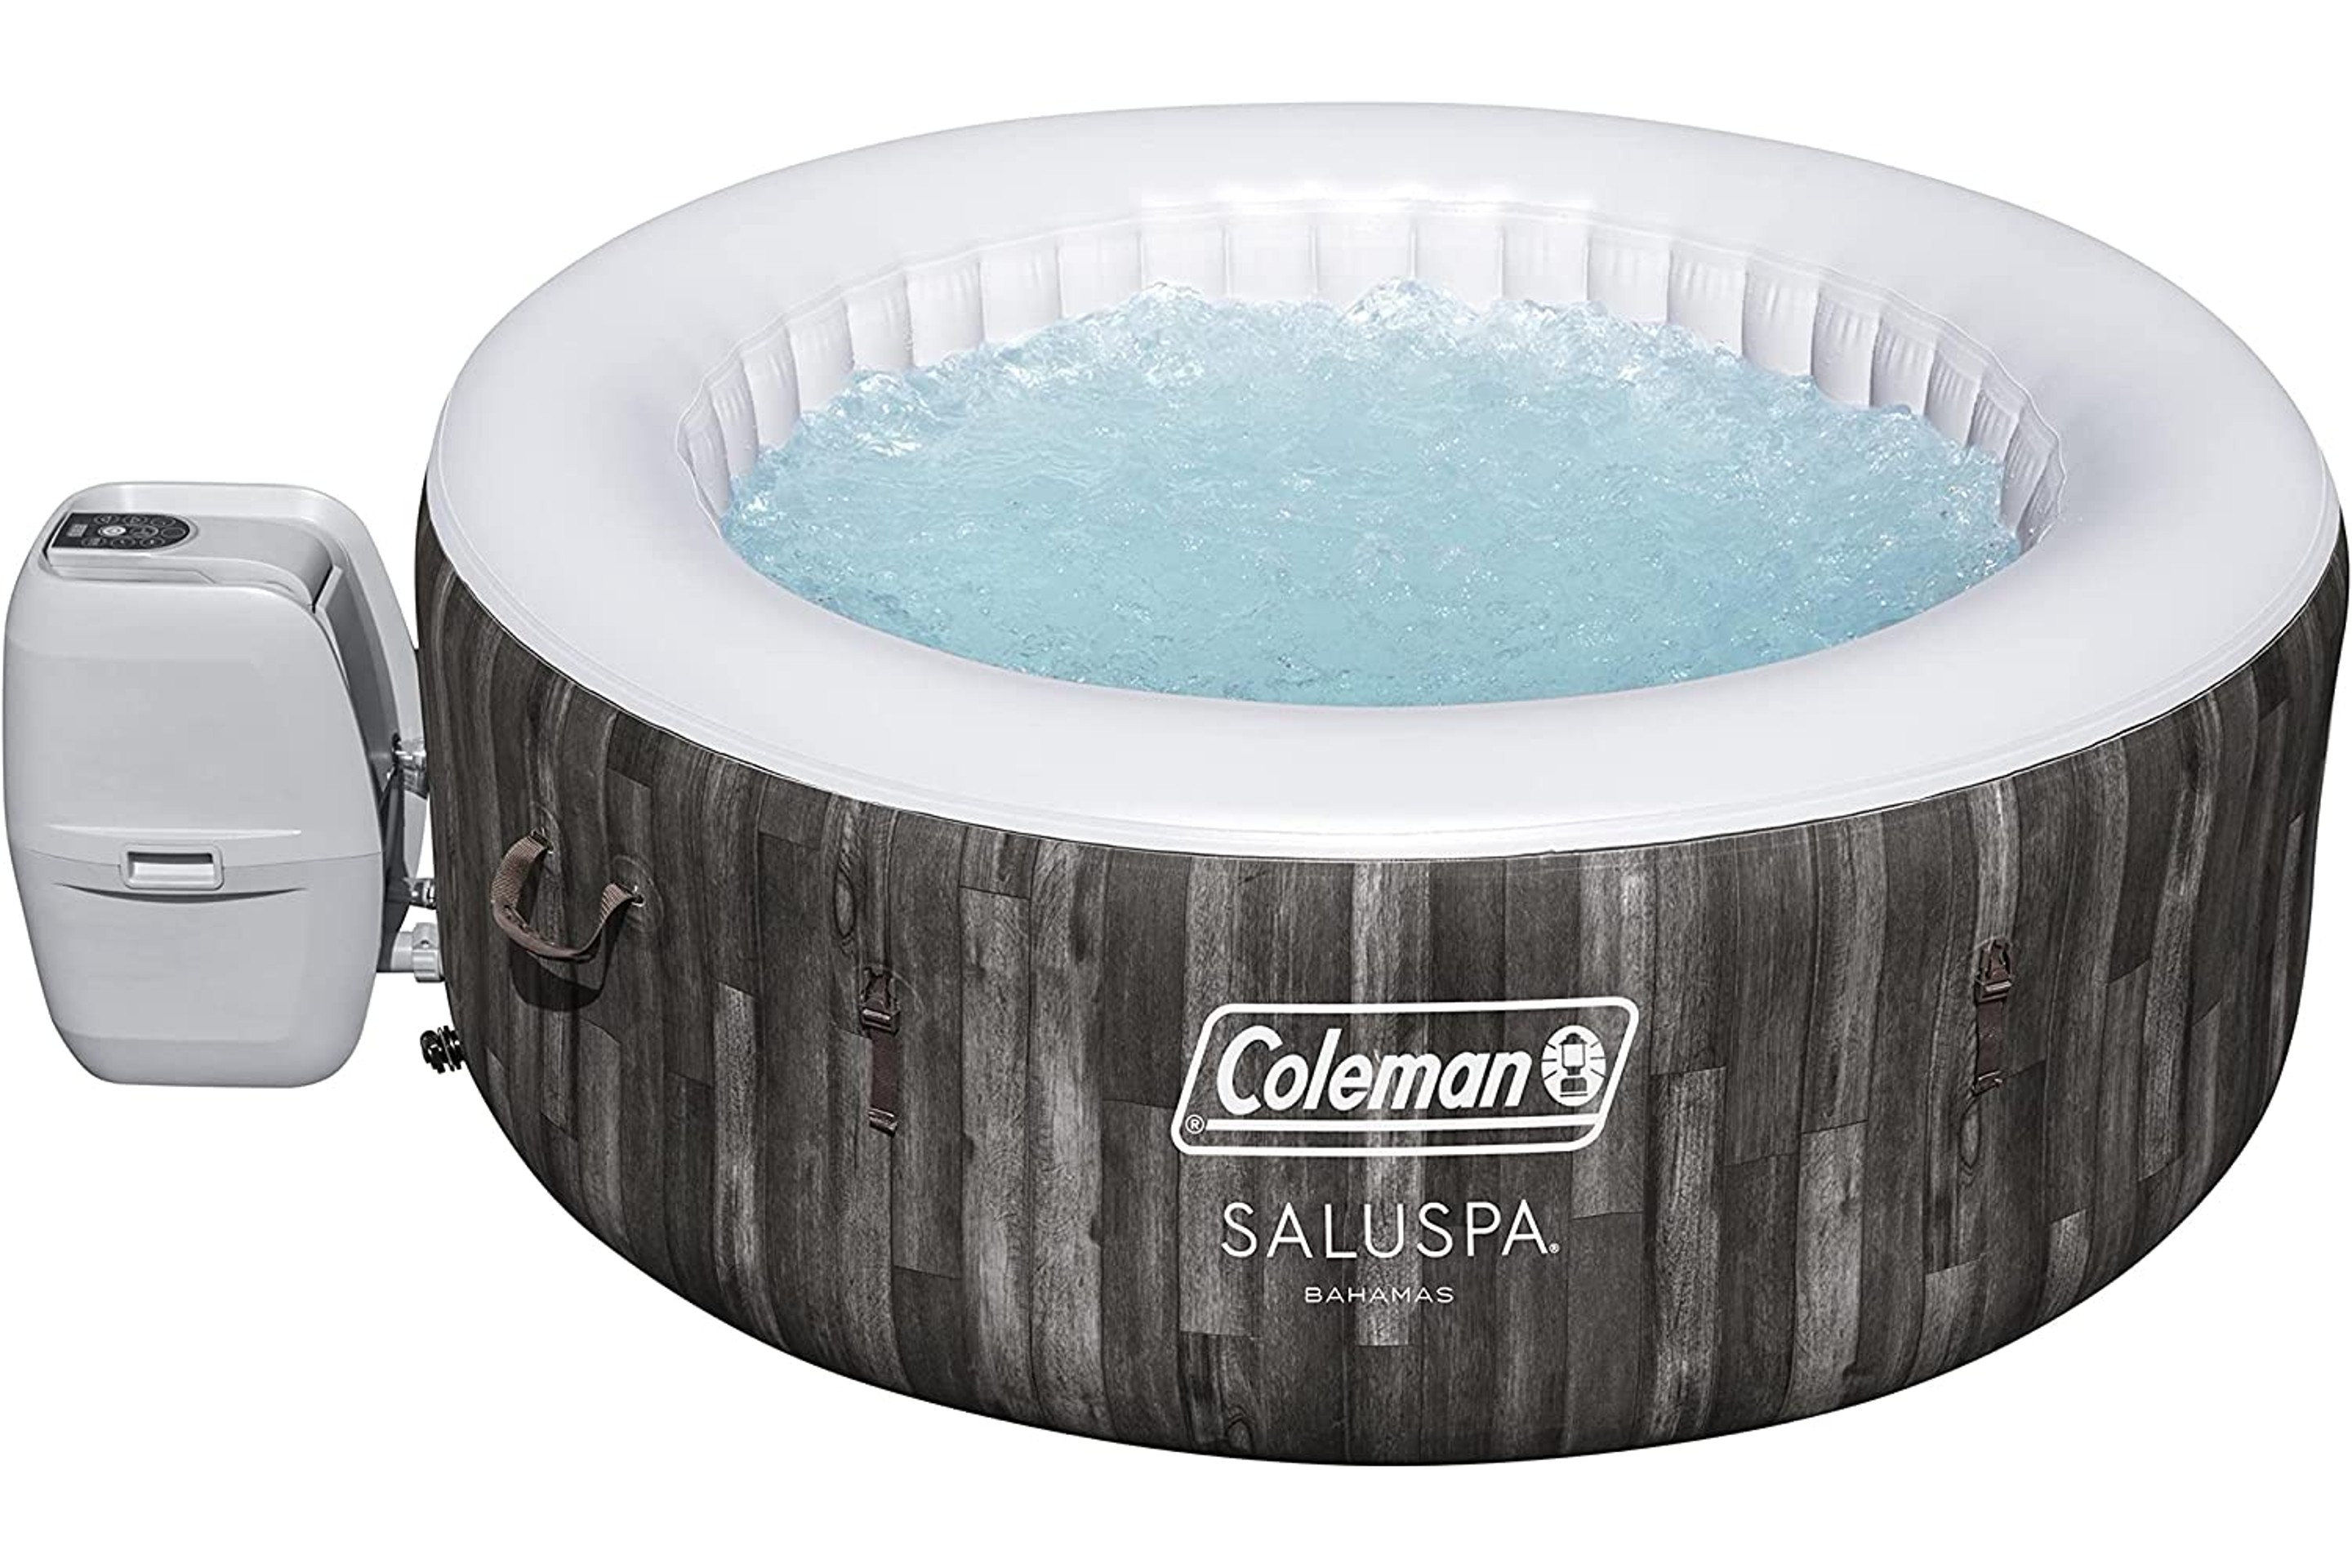 Coleman Bahamas SaluSpa Hot Tub